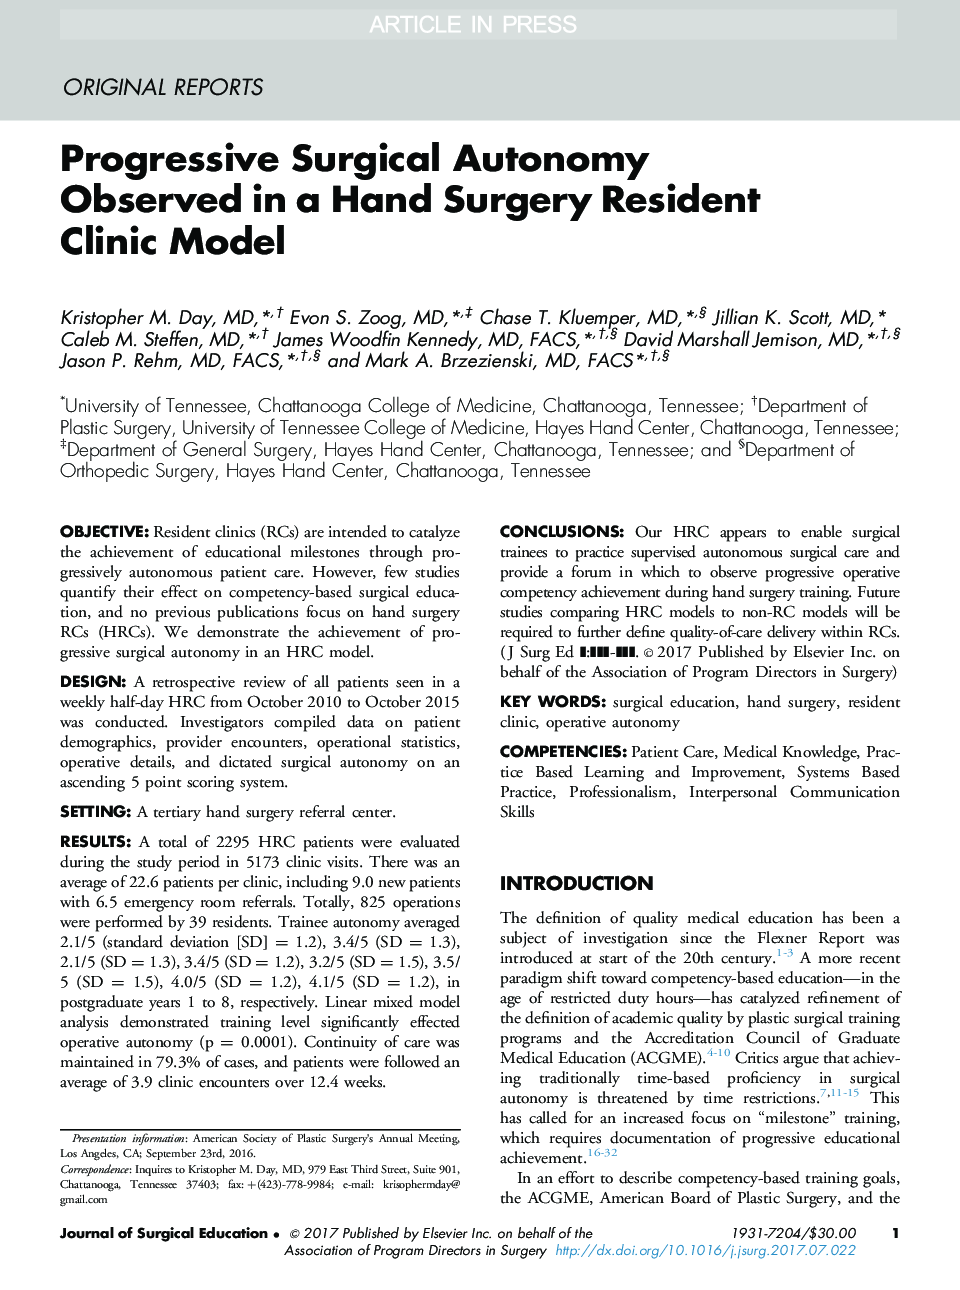 خود ارزیابی جراحی پیشرفته در یک مدل کلینیک بستری جراحی دستی مشاهده شده است 